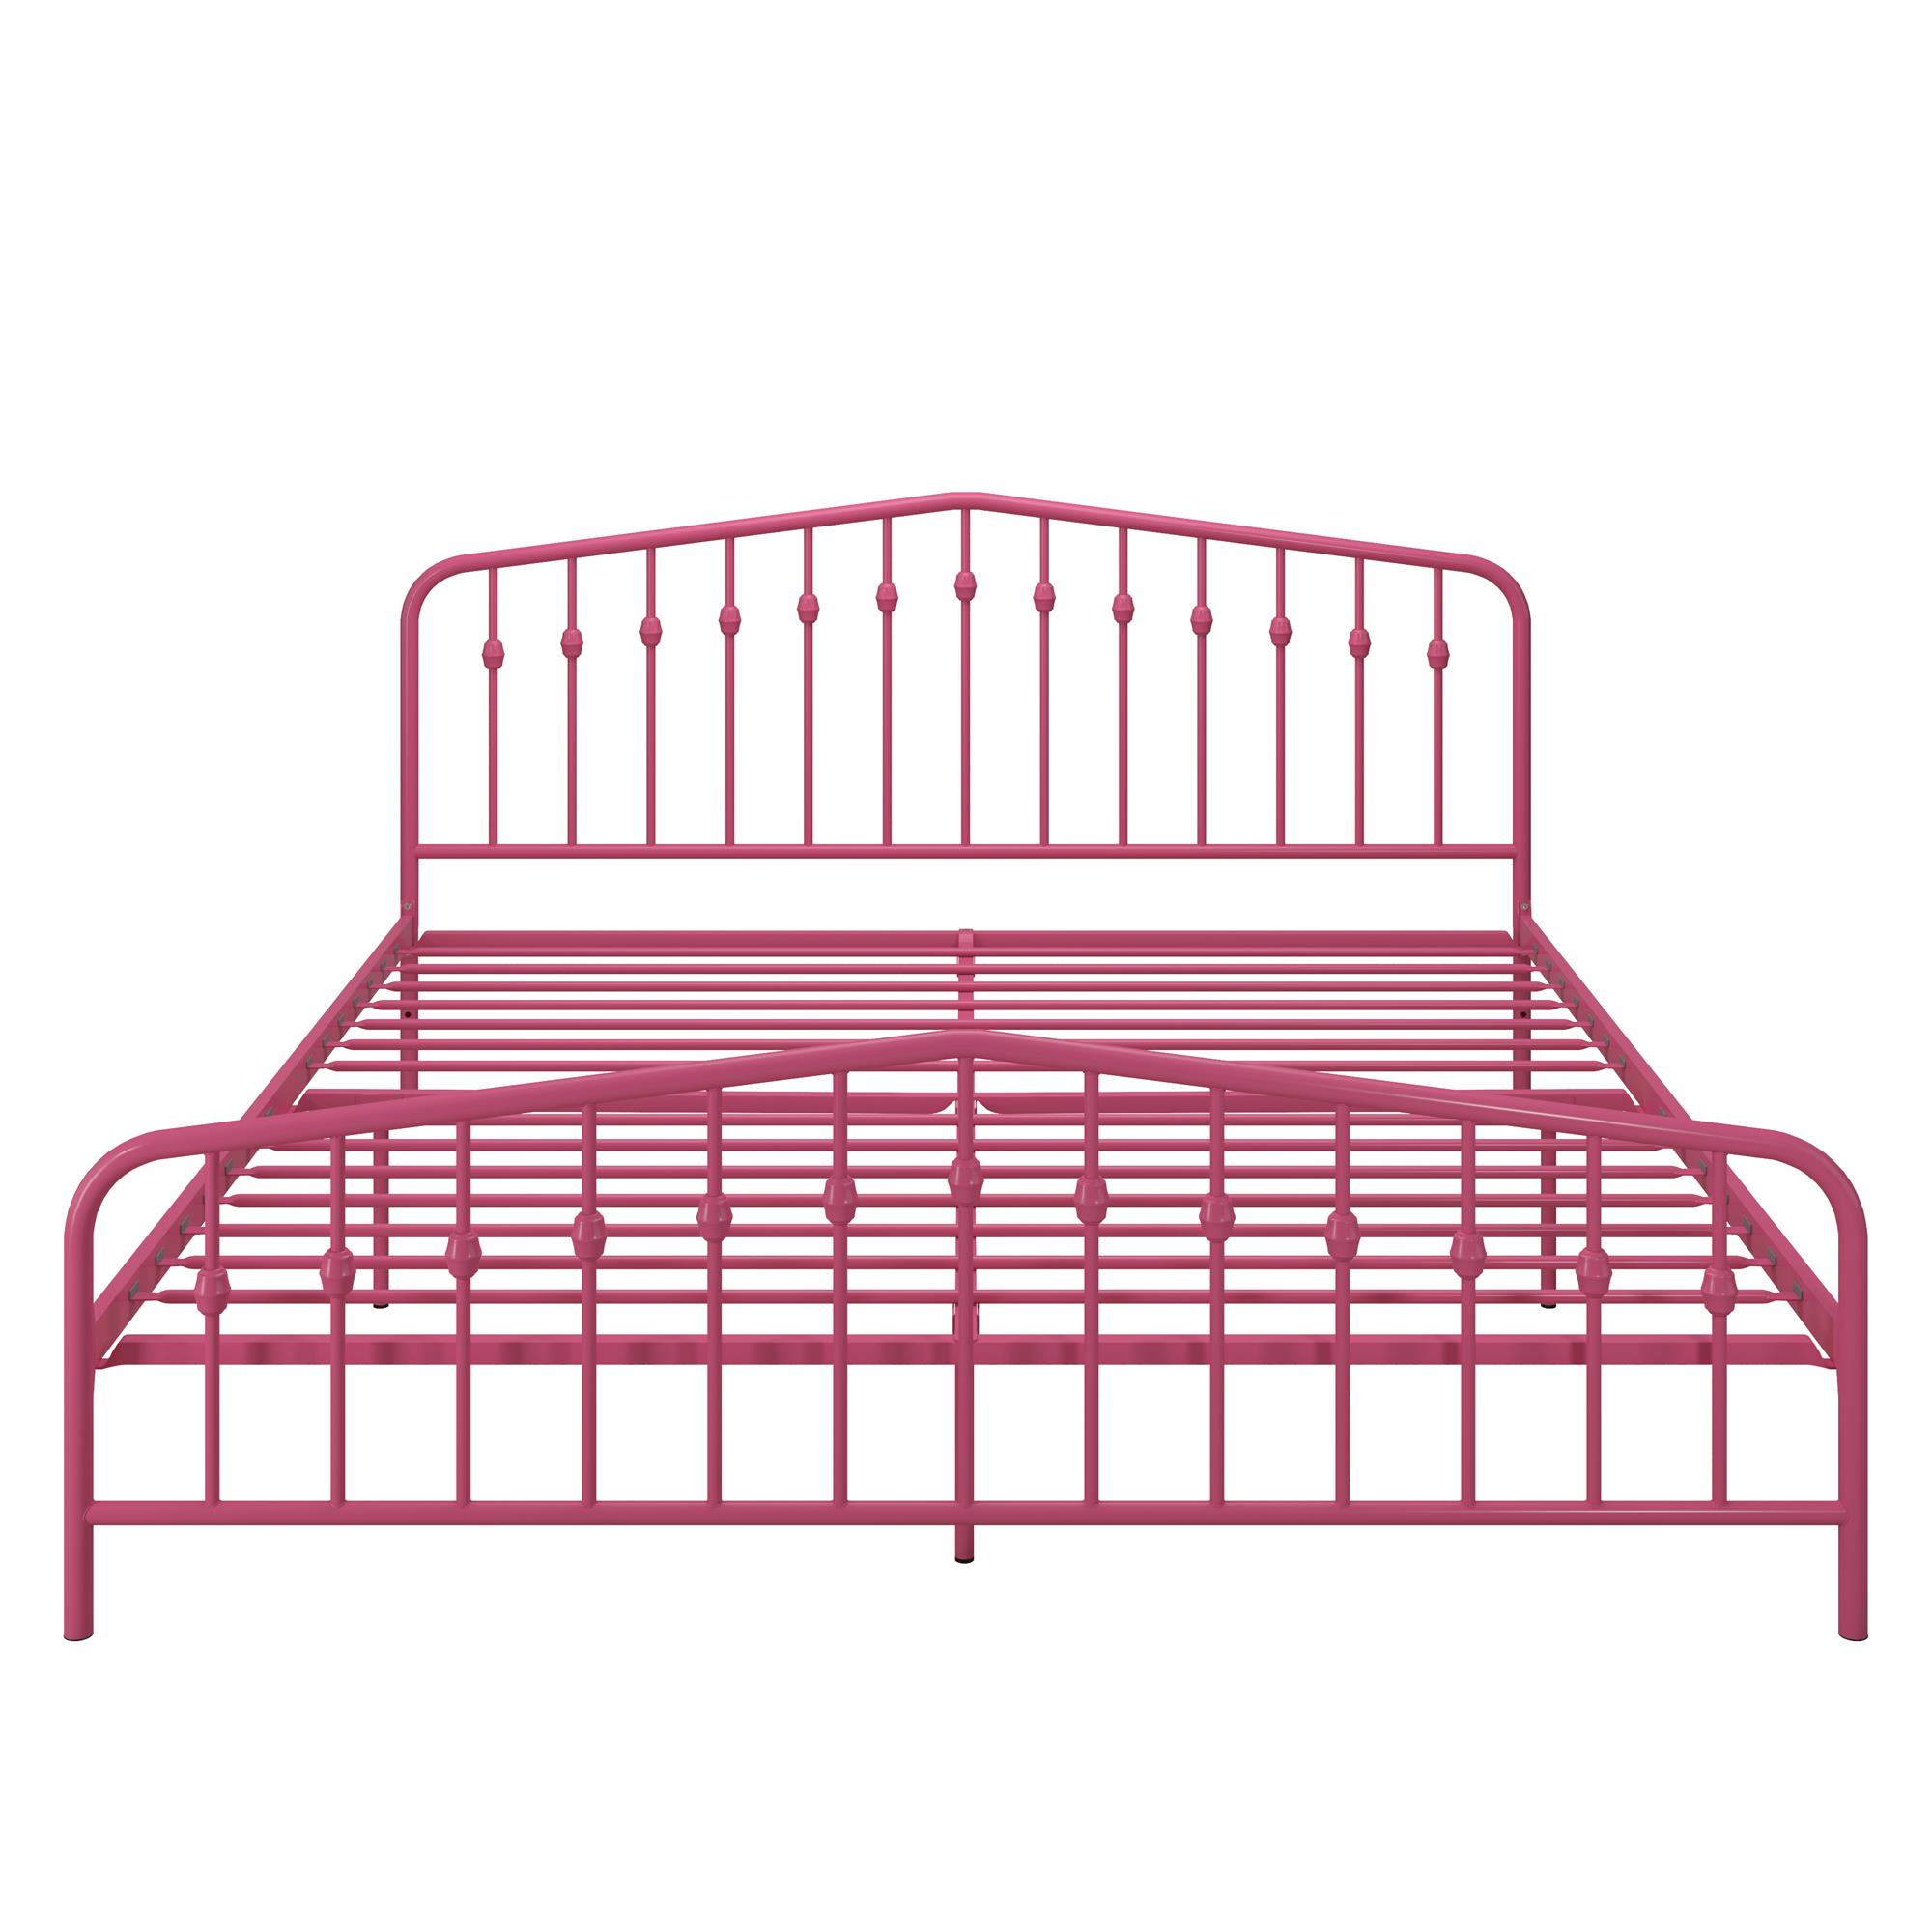 Novogratz Bushwick Metal Platform Bed Frame with Headboard, King, Hot Pink - image 3 of 26